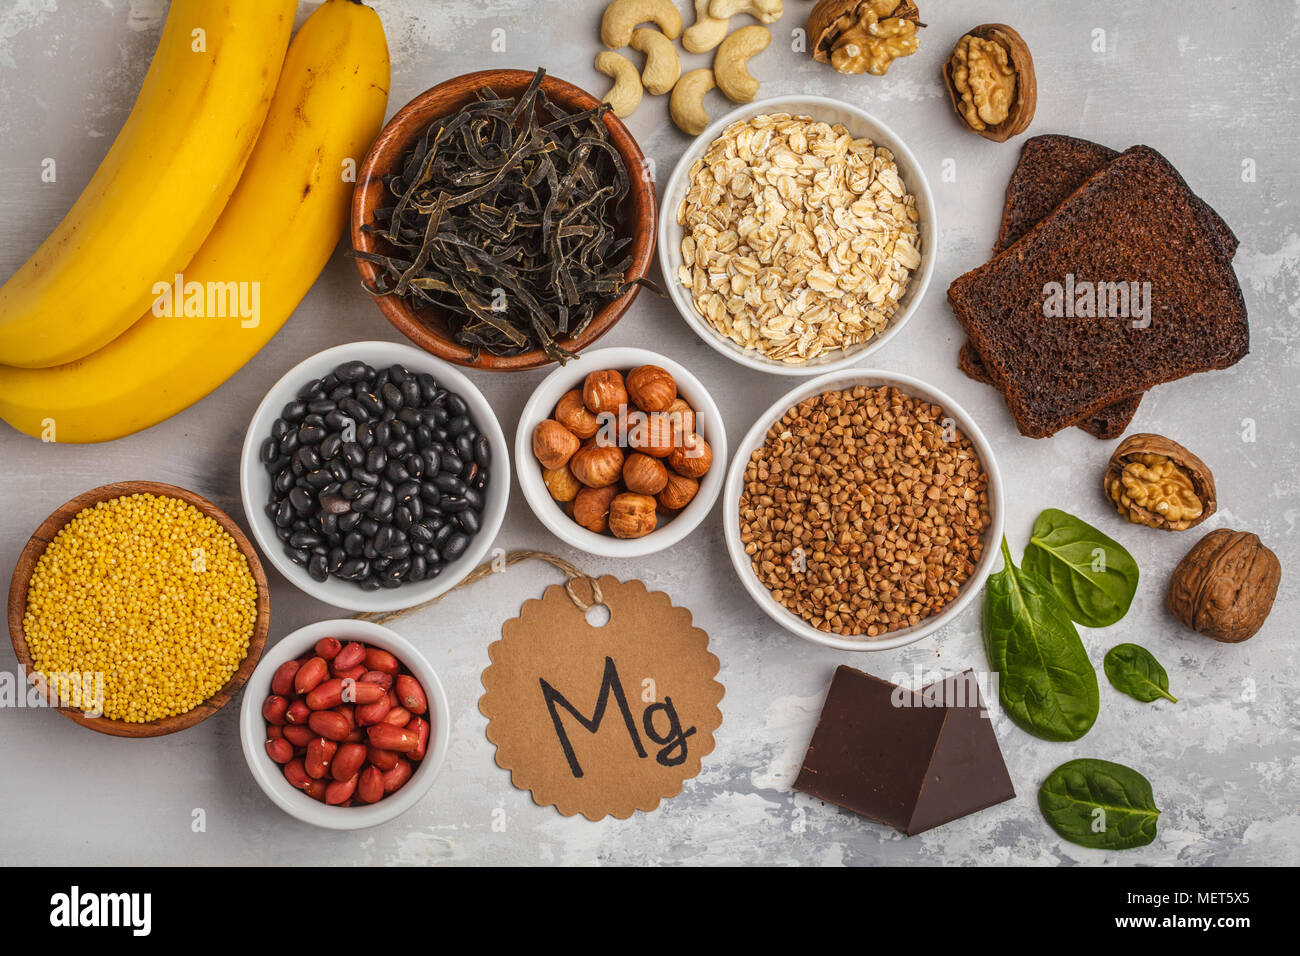 Gesunde Ernährung Diät Konzept. Zusammenstellung der hohe Magnesium  Quellen. Banane Schokolade Spinat, Buchweizen, Nüsse, Bohnen, Hafer  Stockfotografie - Alamy